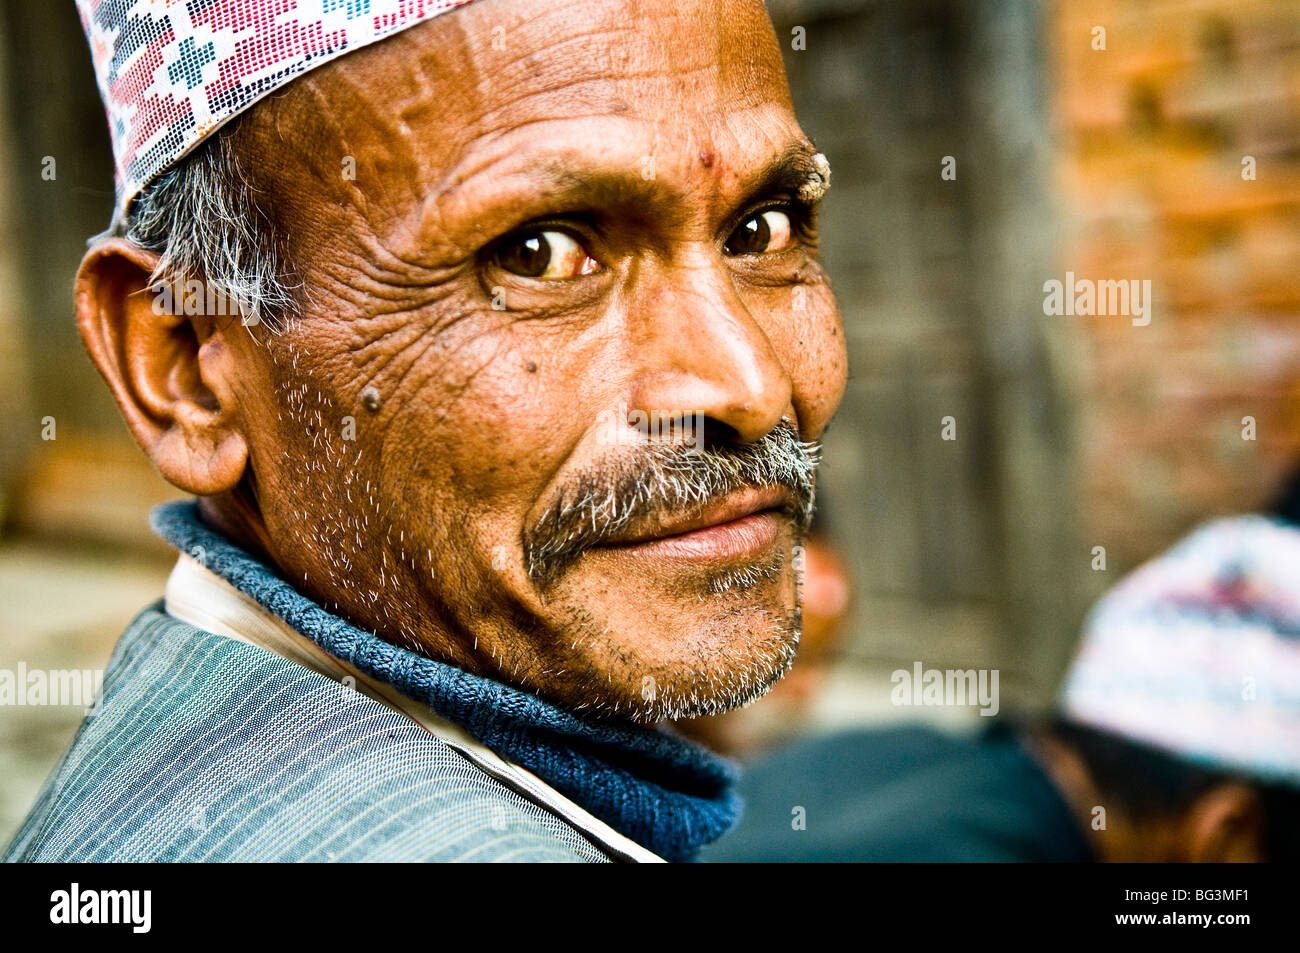 A smiling Nepali man. Stock Photo